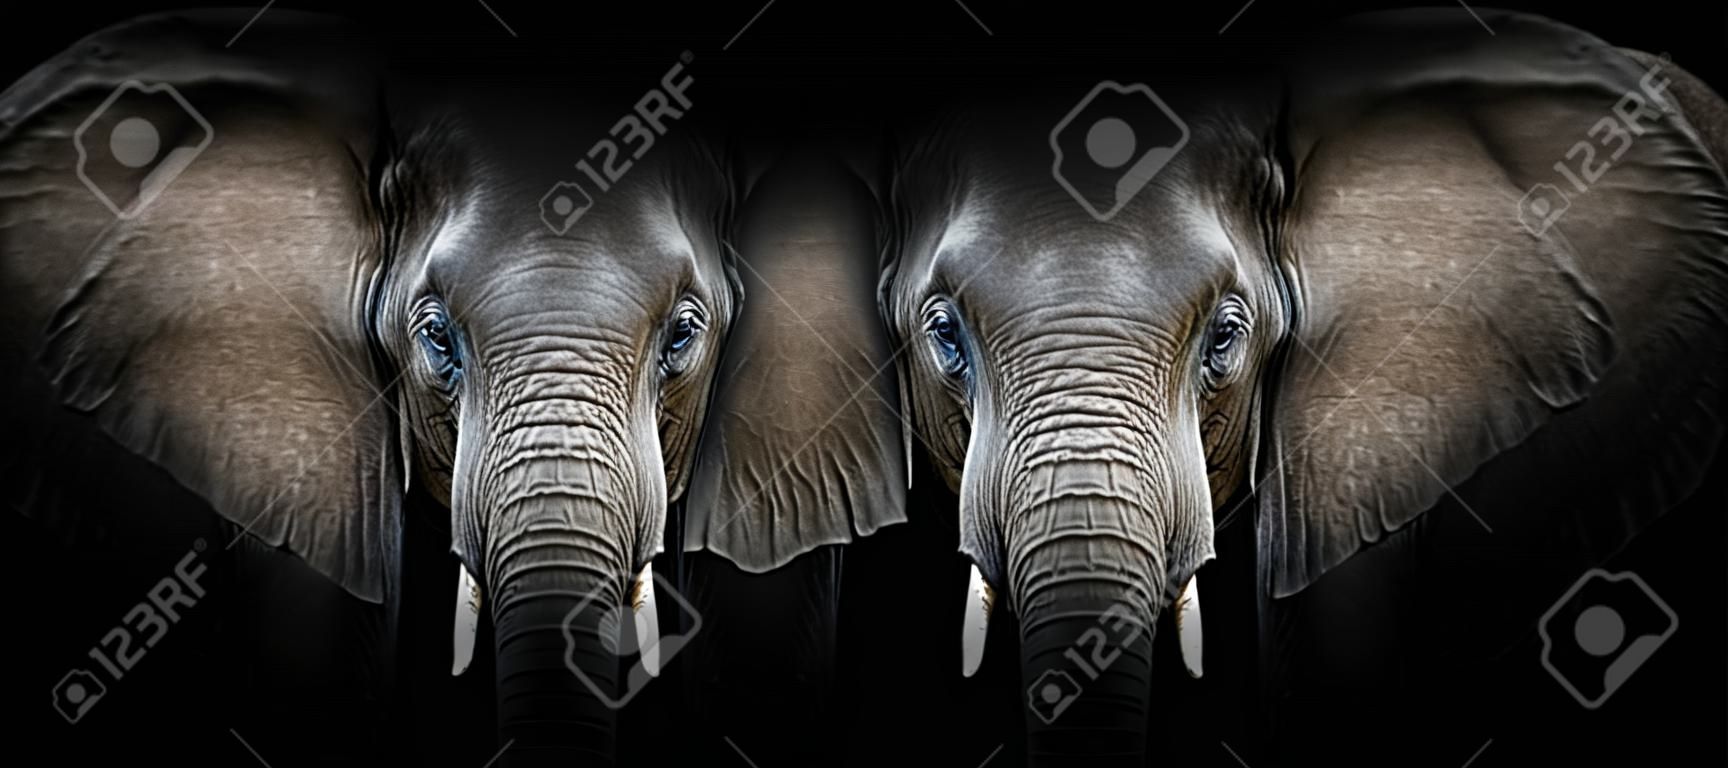 Retrato de elefante sobre un fondo negro. Vista desde la oscuridad